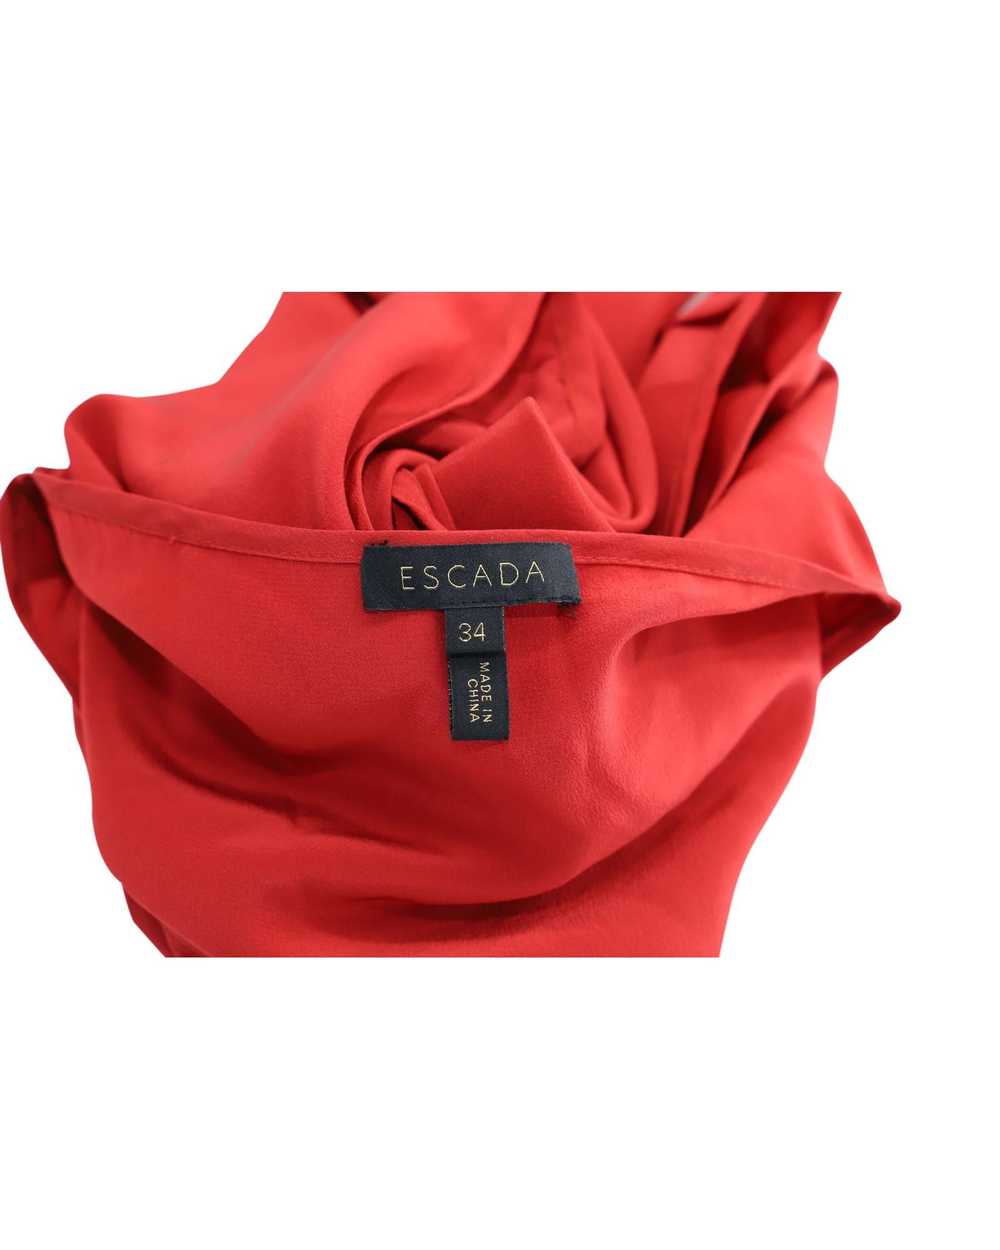 Escada Red Silk Cap-Sleeve Blouse by Escada - image 3